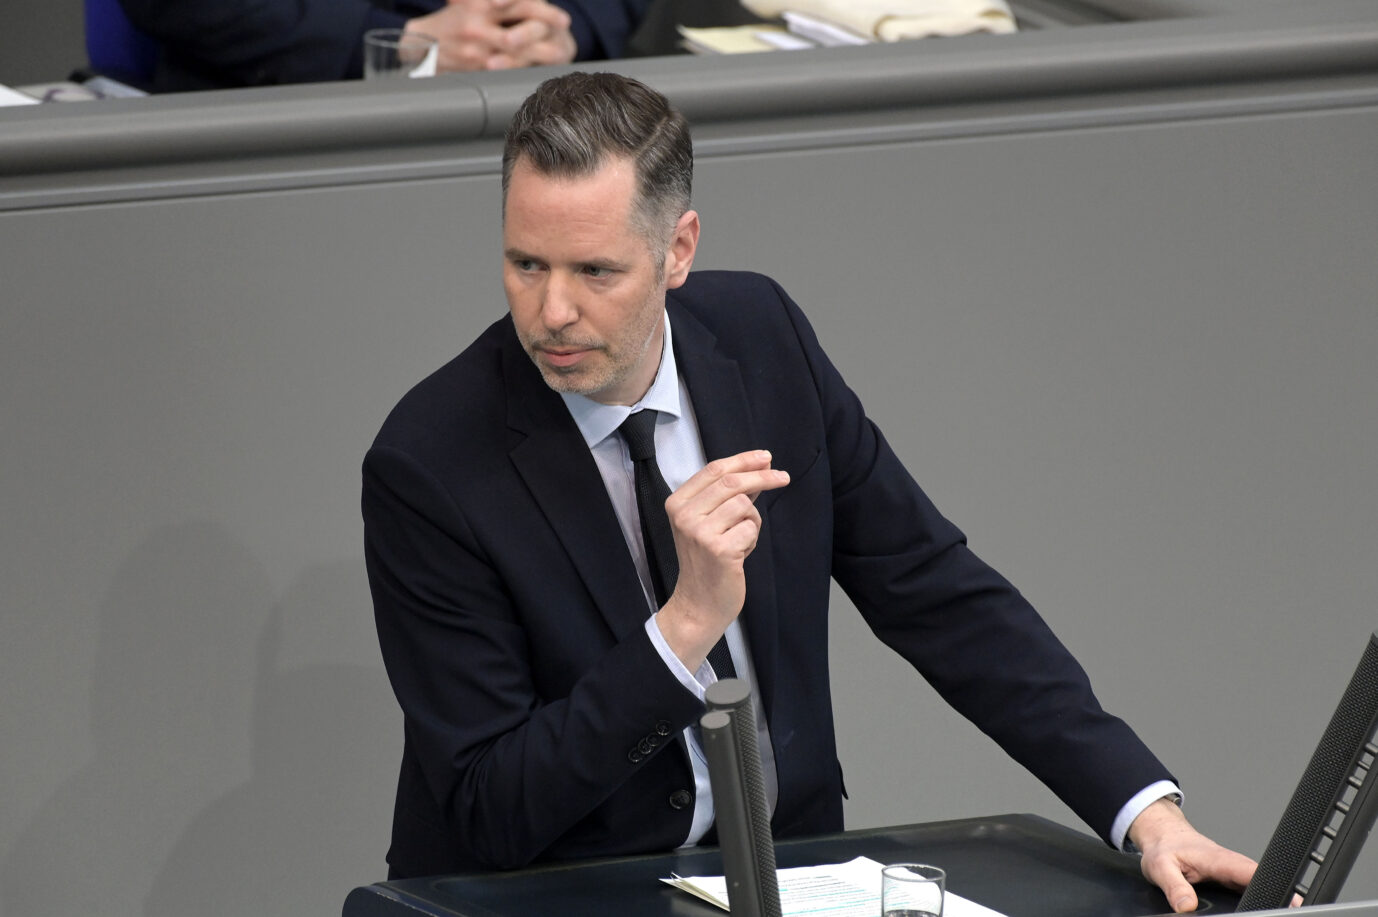 Der Vorsitzende der FDP-Bundestagsfraktion, Christian Dürr, hat Pläne für ein höheres Rentenalter.